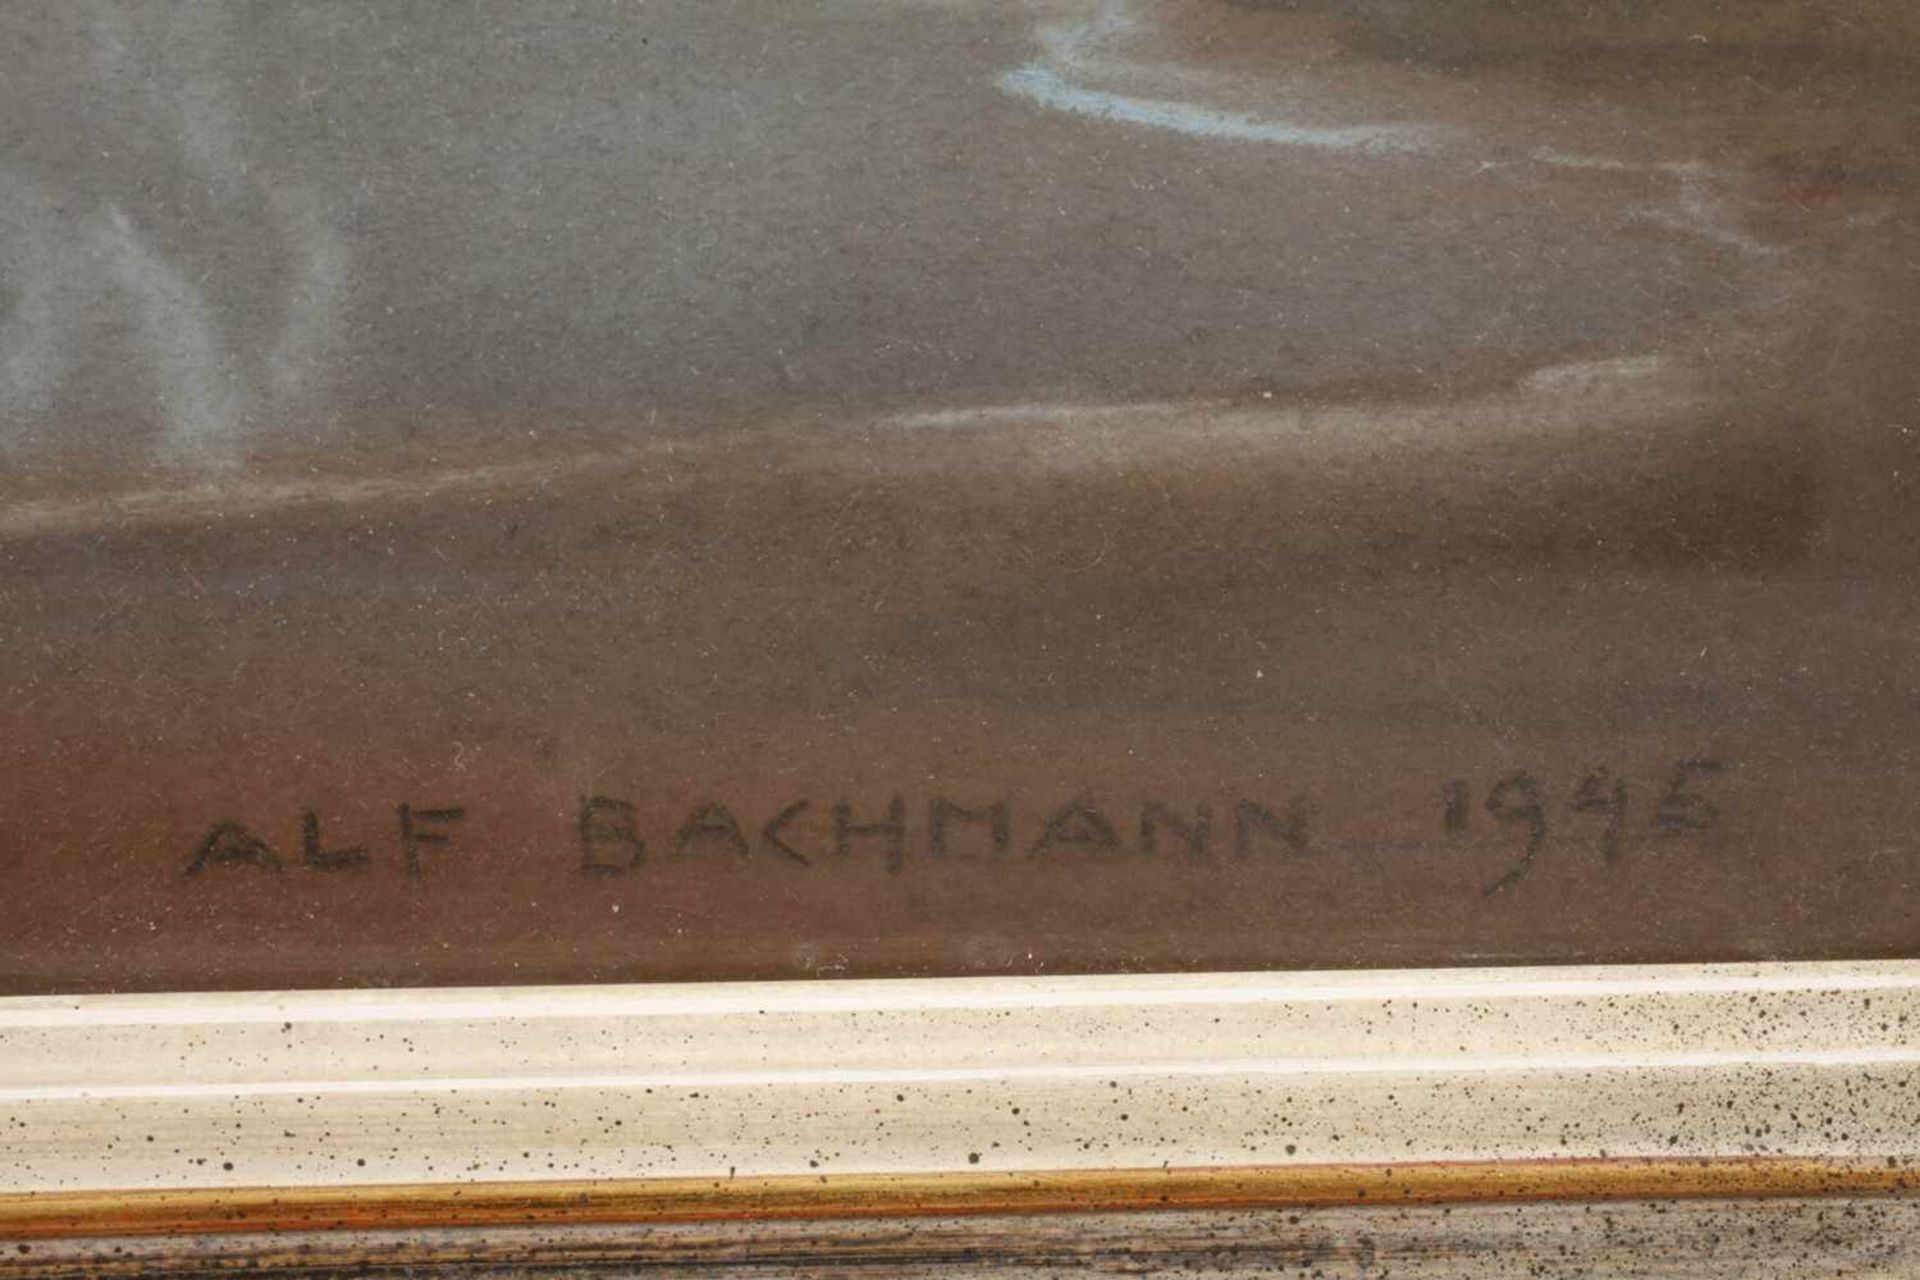 Alf Bachmann, "Frühlingsmorgen II"Blick über das weite, stille Meer auf die am locker bewölkten - Bild 3 aus 3